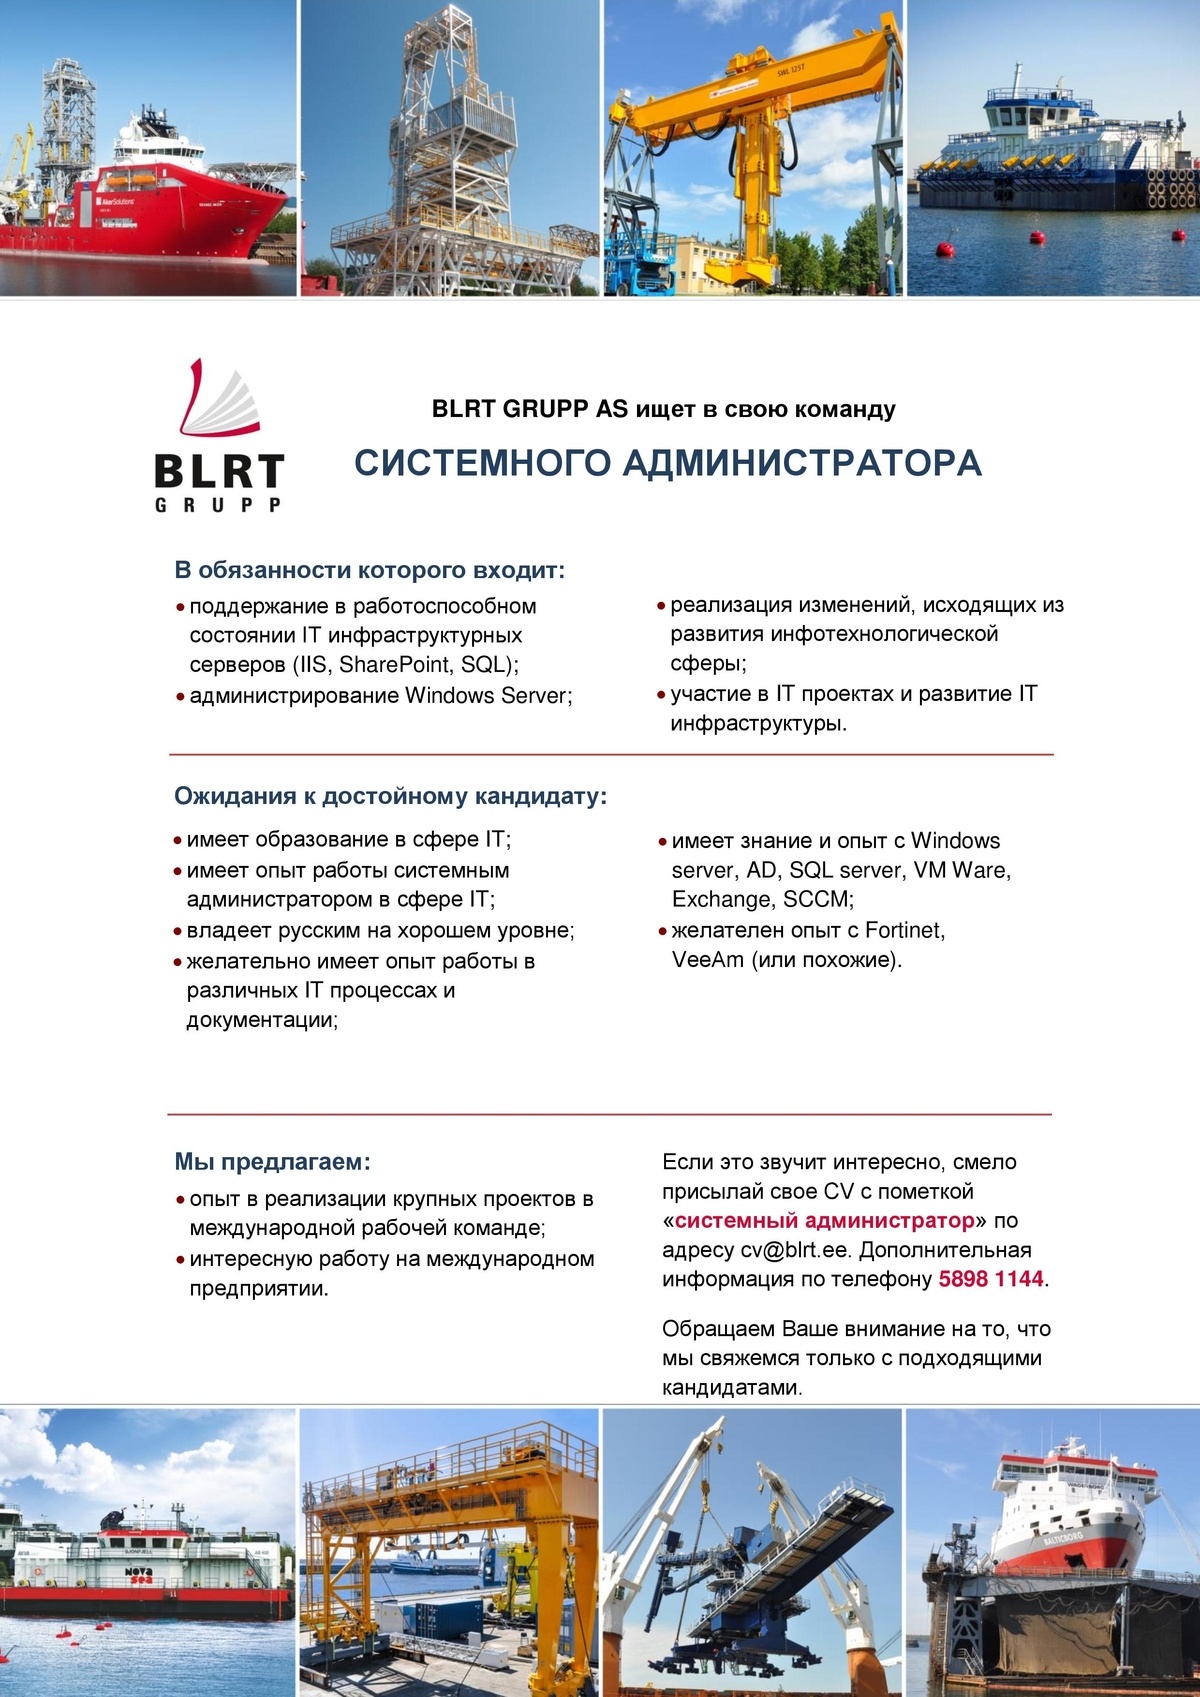 BLRT GRUPP AS Системный администратор